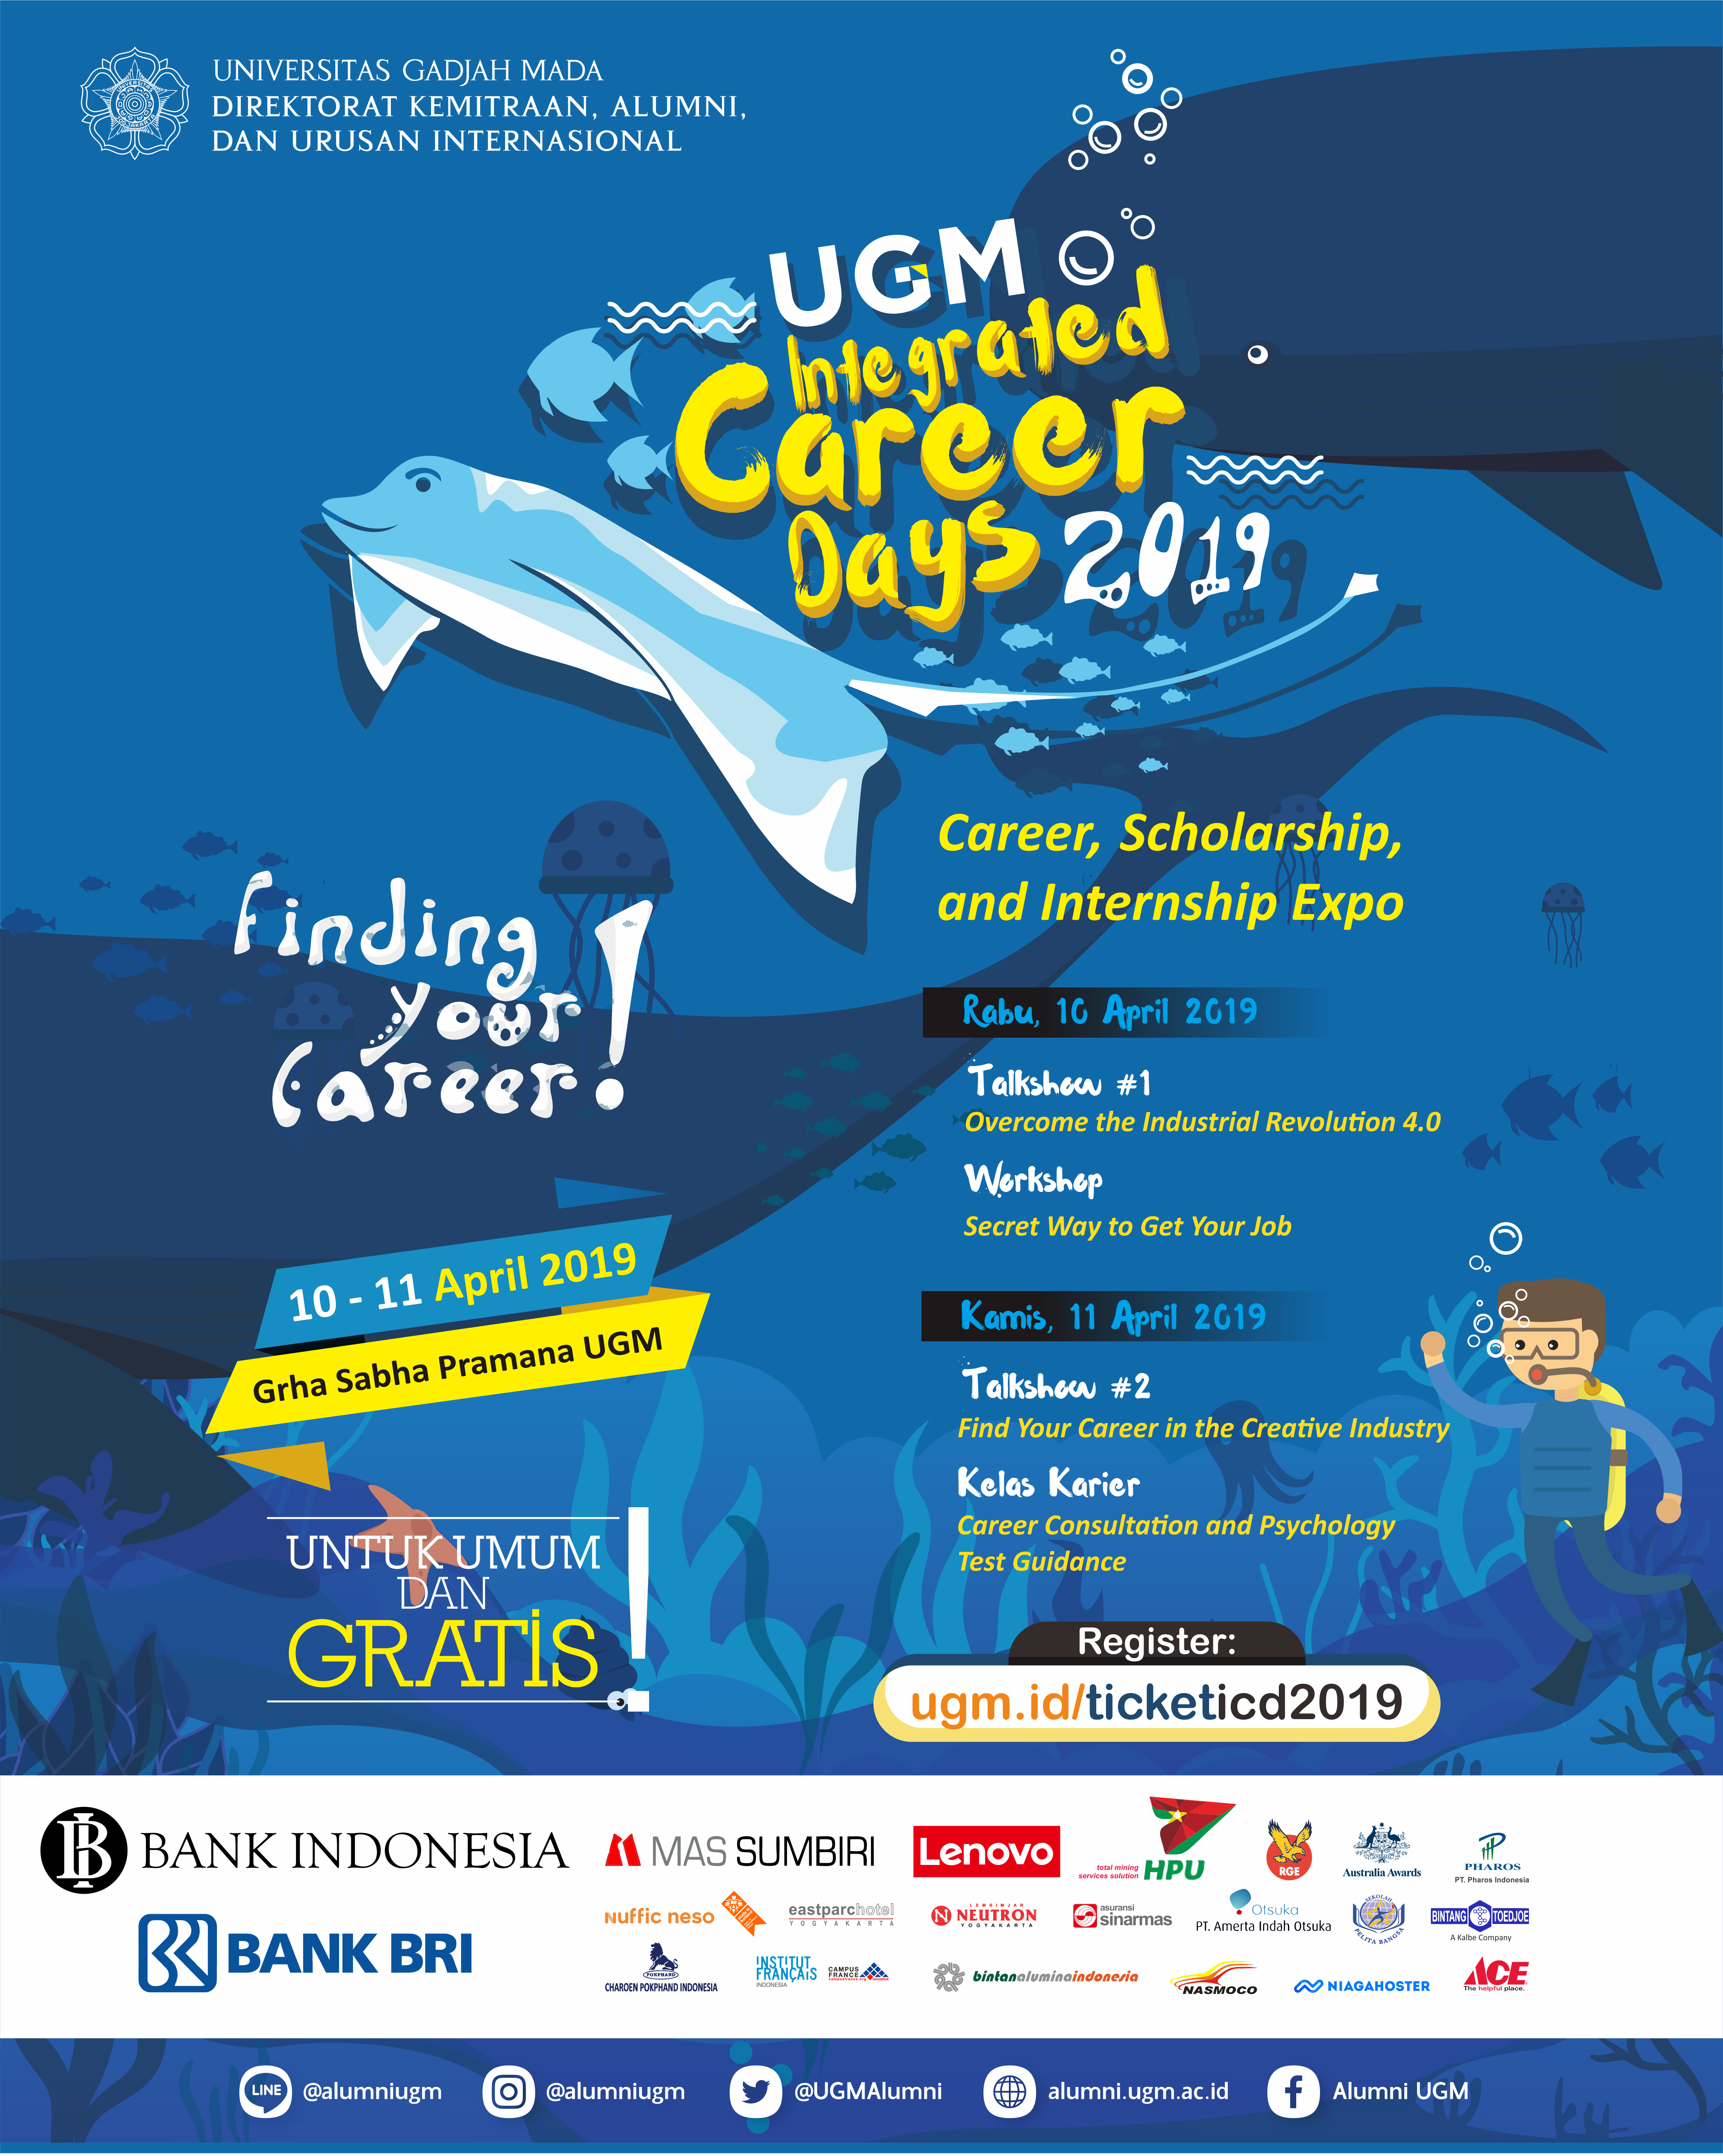 Rangkaian acara UGM ICD 2019 career scholarship dan internship expo Selain itu juga ada talkshow workshop dan konsultasi karier untuk meningkatkan